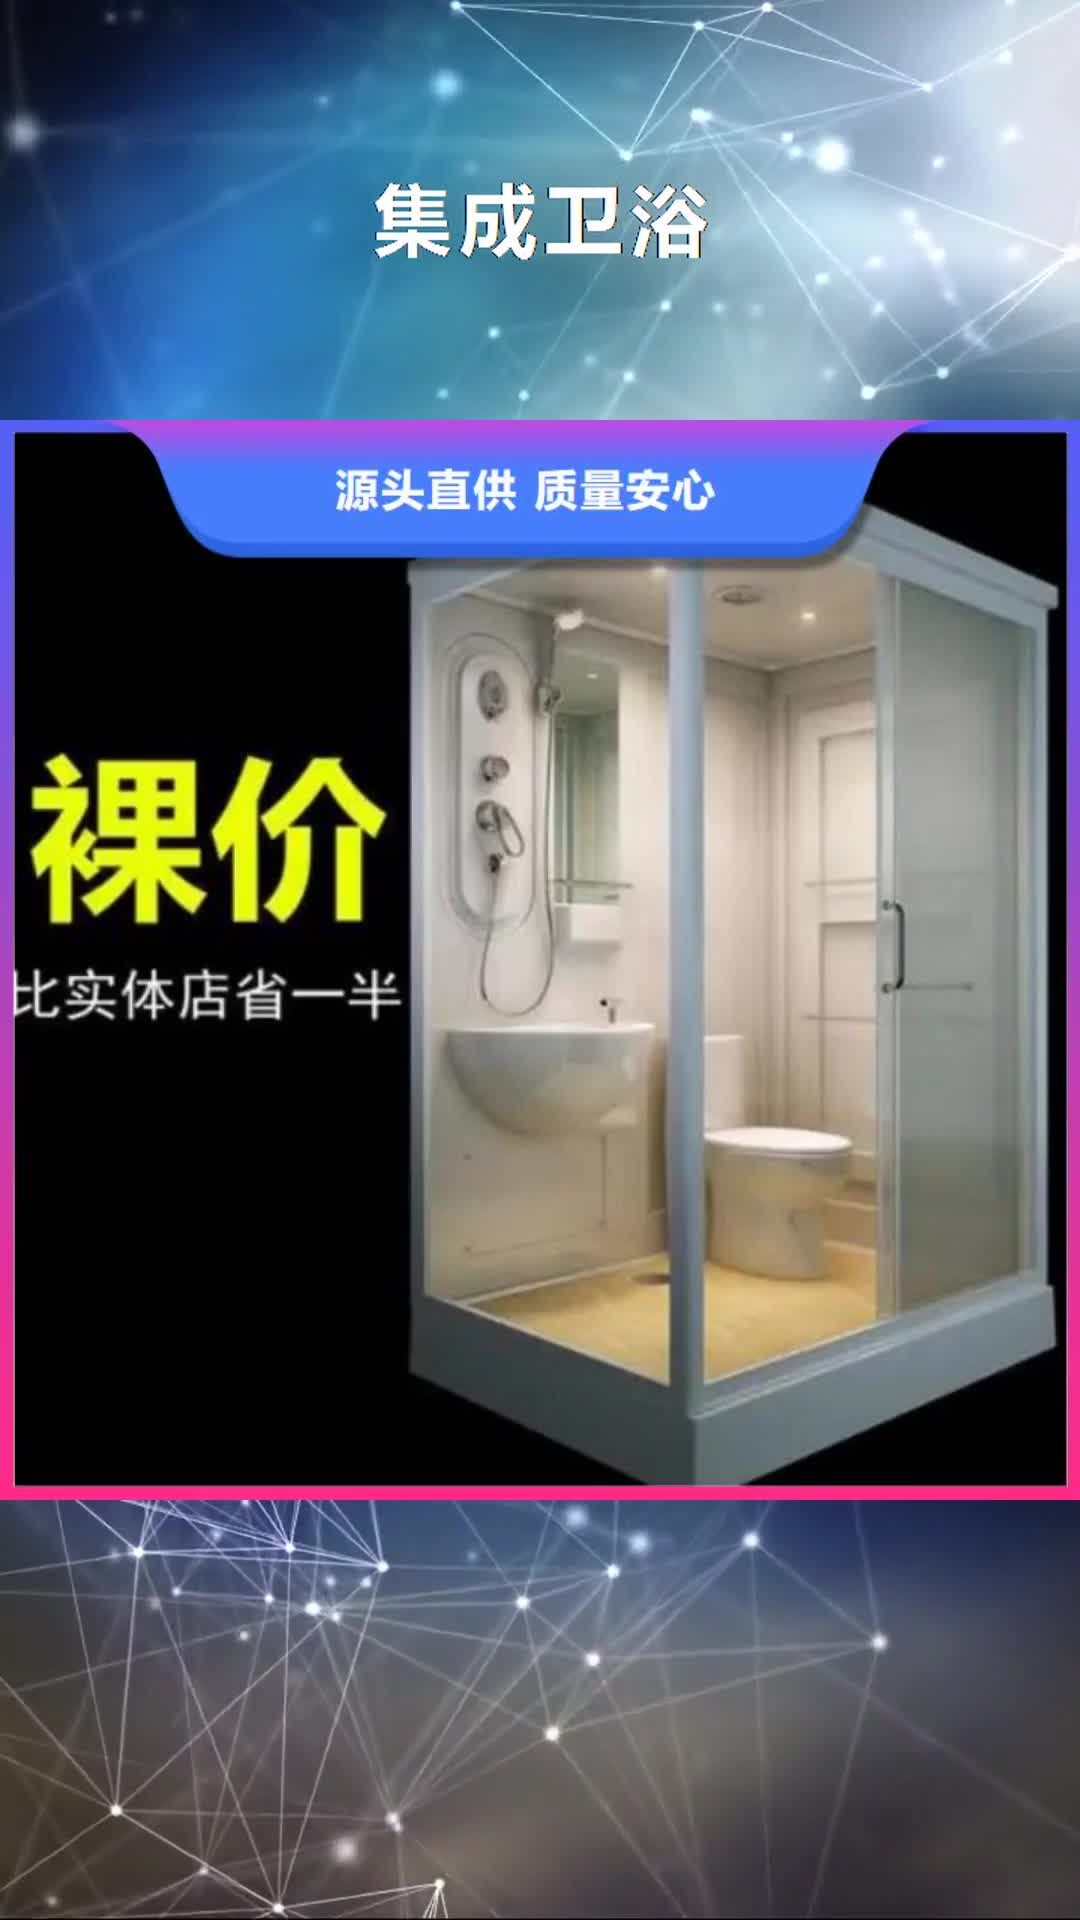 昭通 集成卫浴 【金属雕花厕  所】工程施工案例